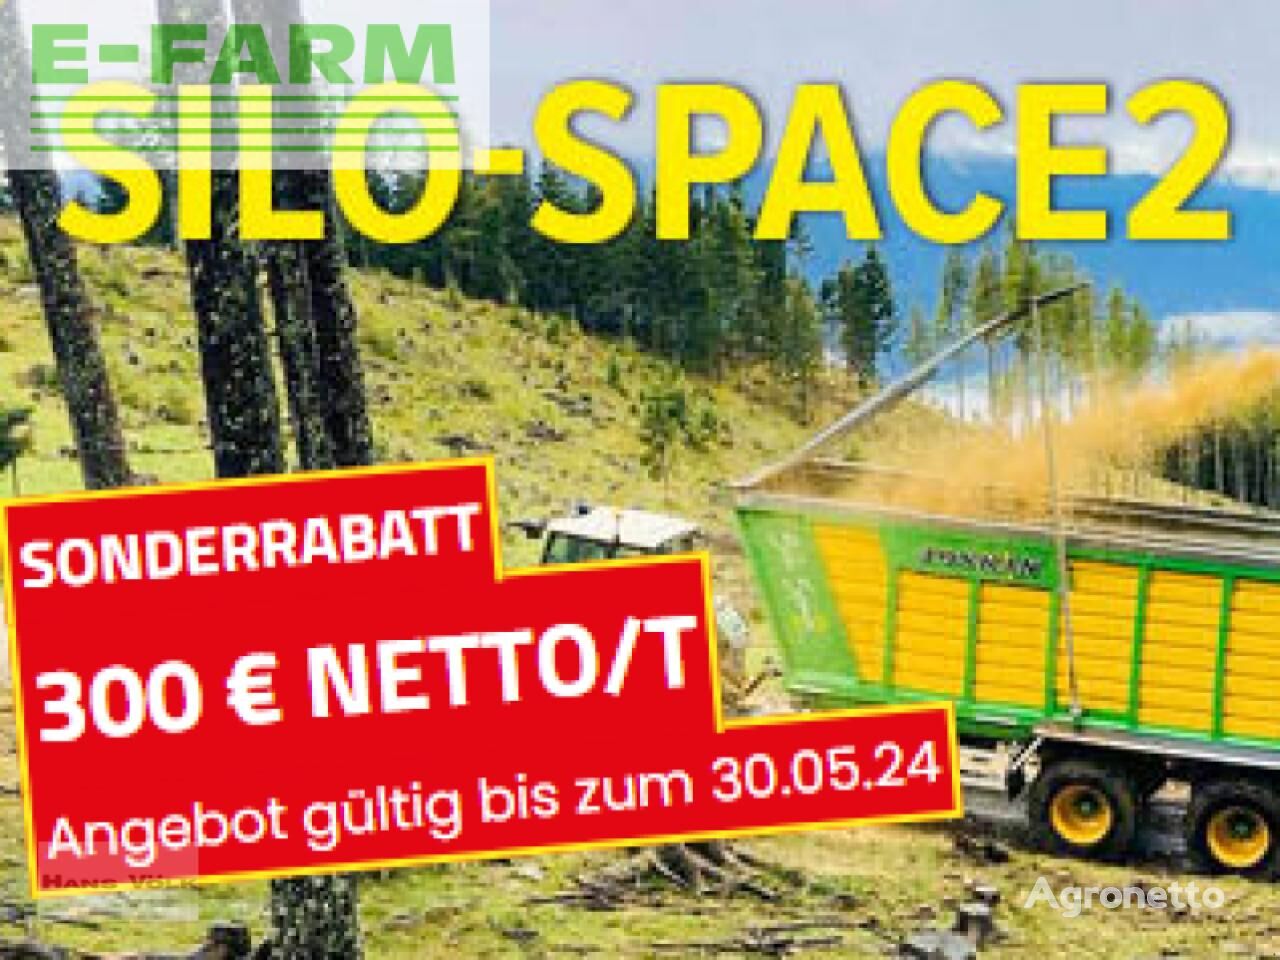 Joskin silo-space2 self-loading wagon